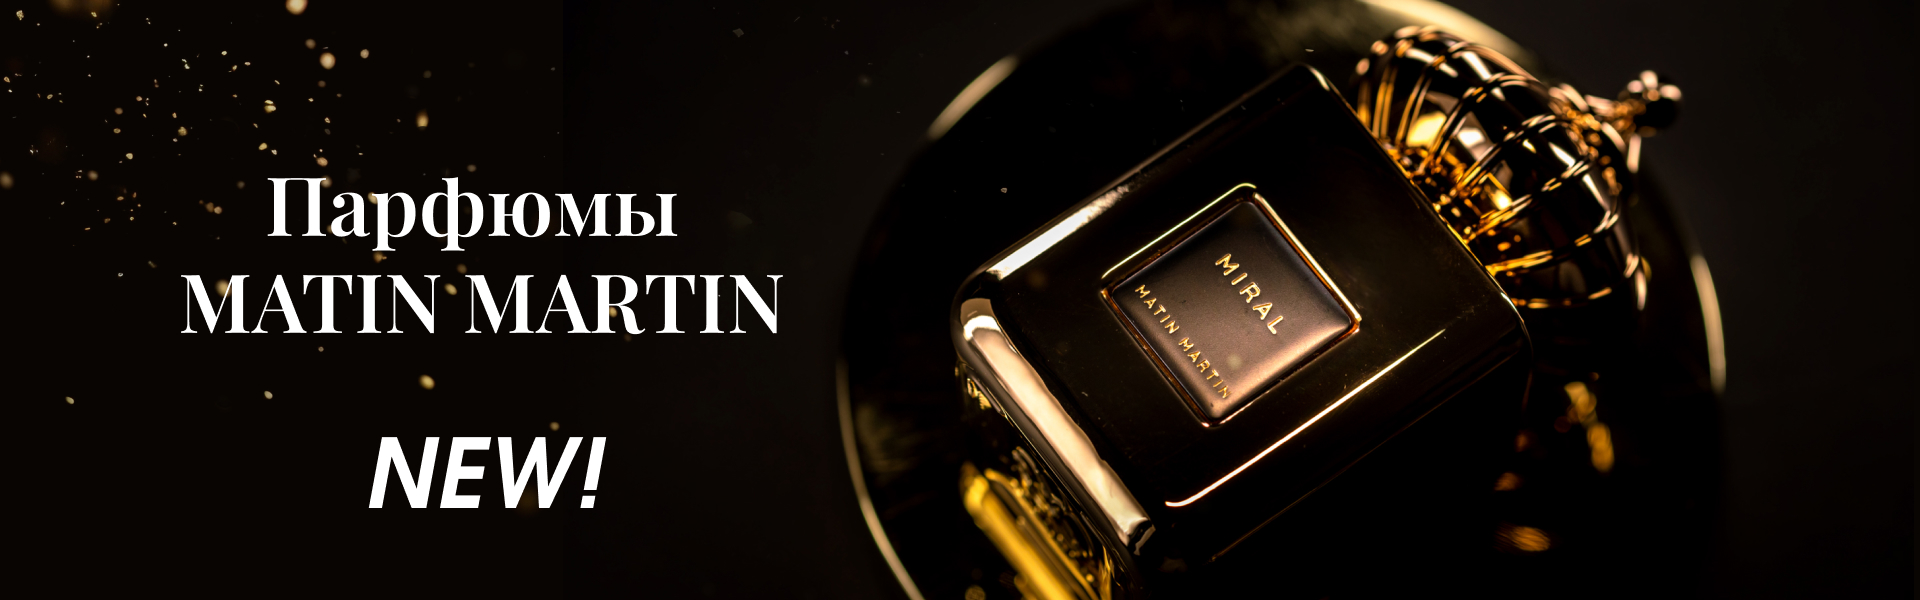 https://www.starbeauty.kz/ru/catalog/15292-parfum_matin_martin/